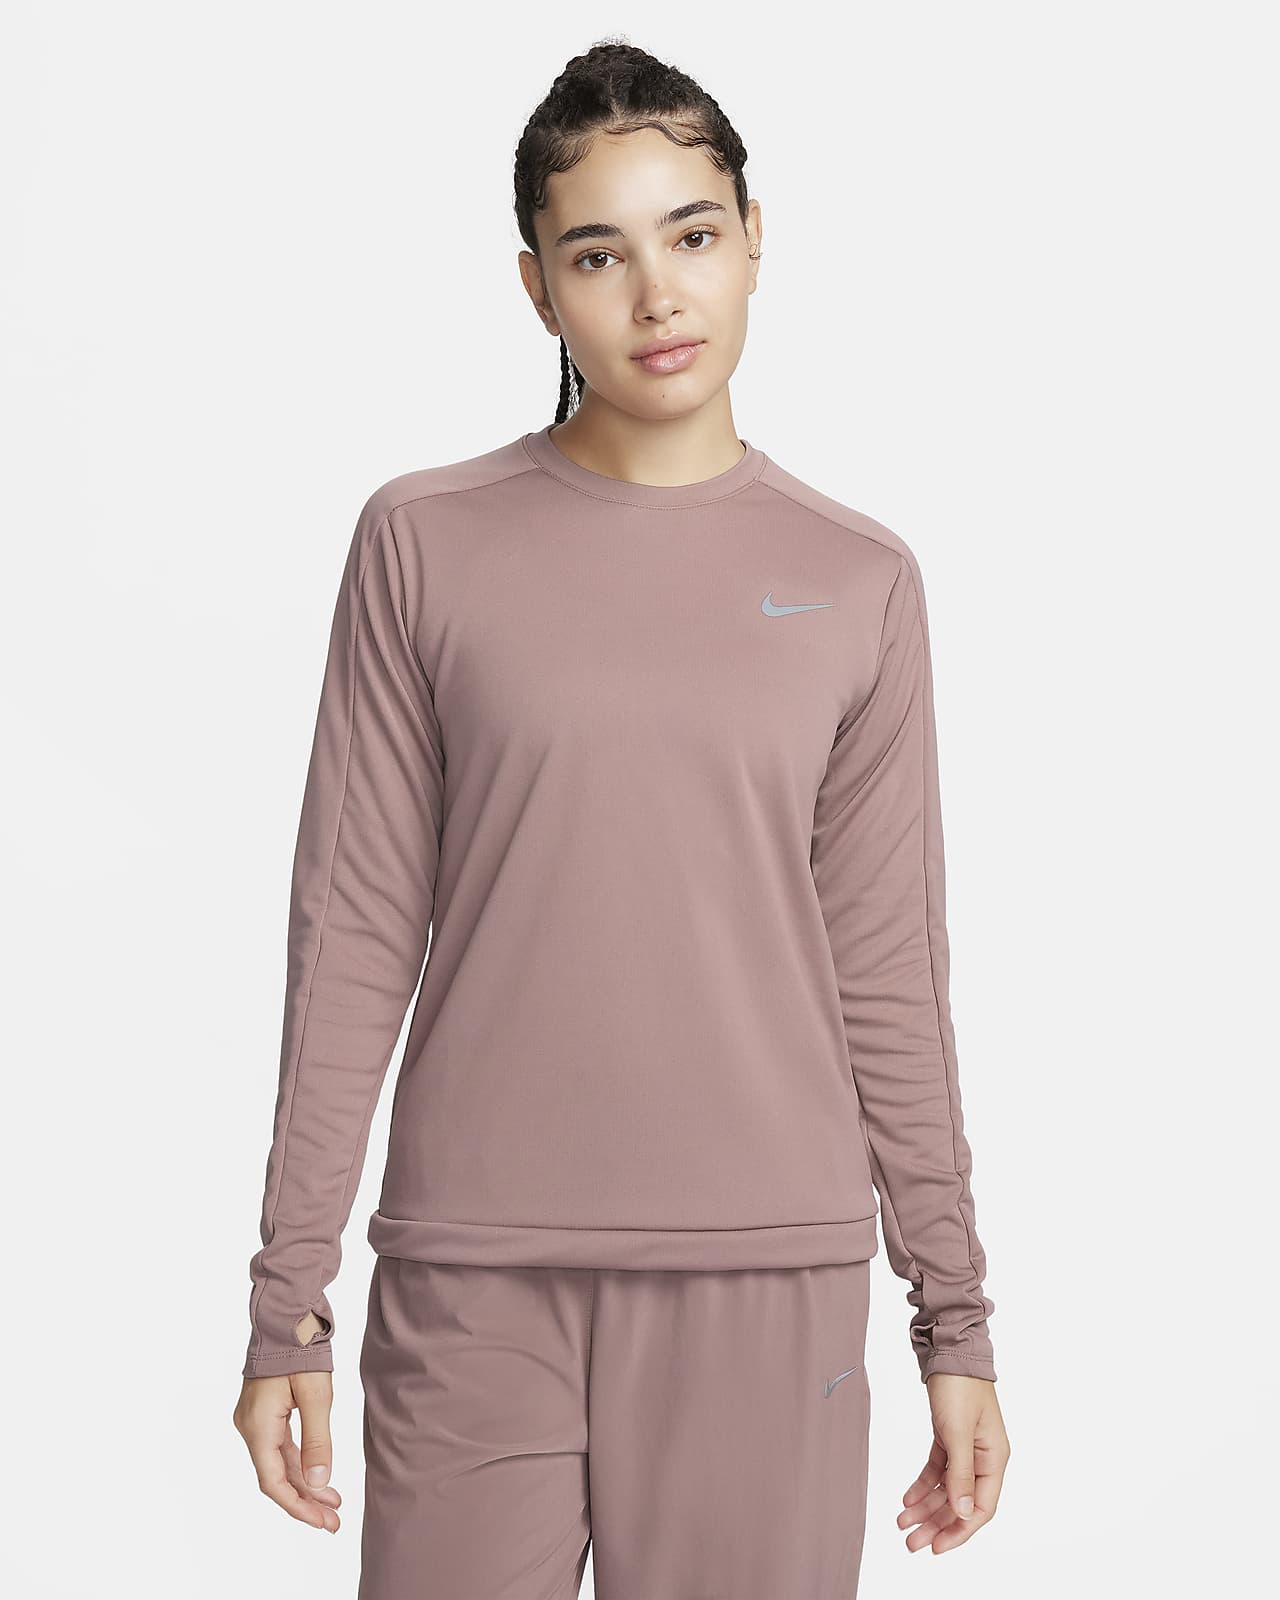 Damska koszulka z półokrągłym dekoltem do biegania Nike Dri-FIT